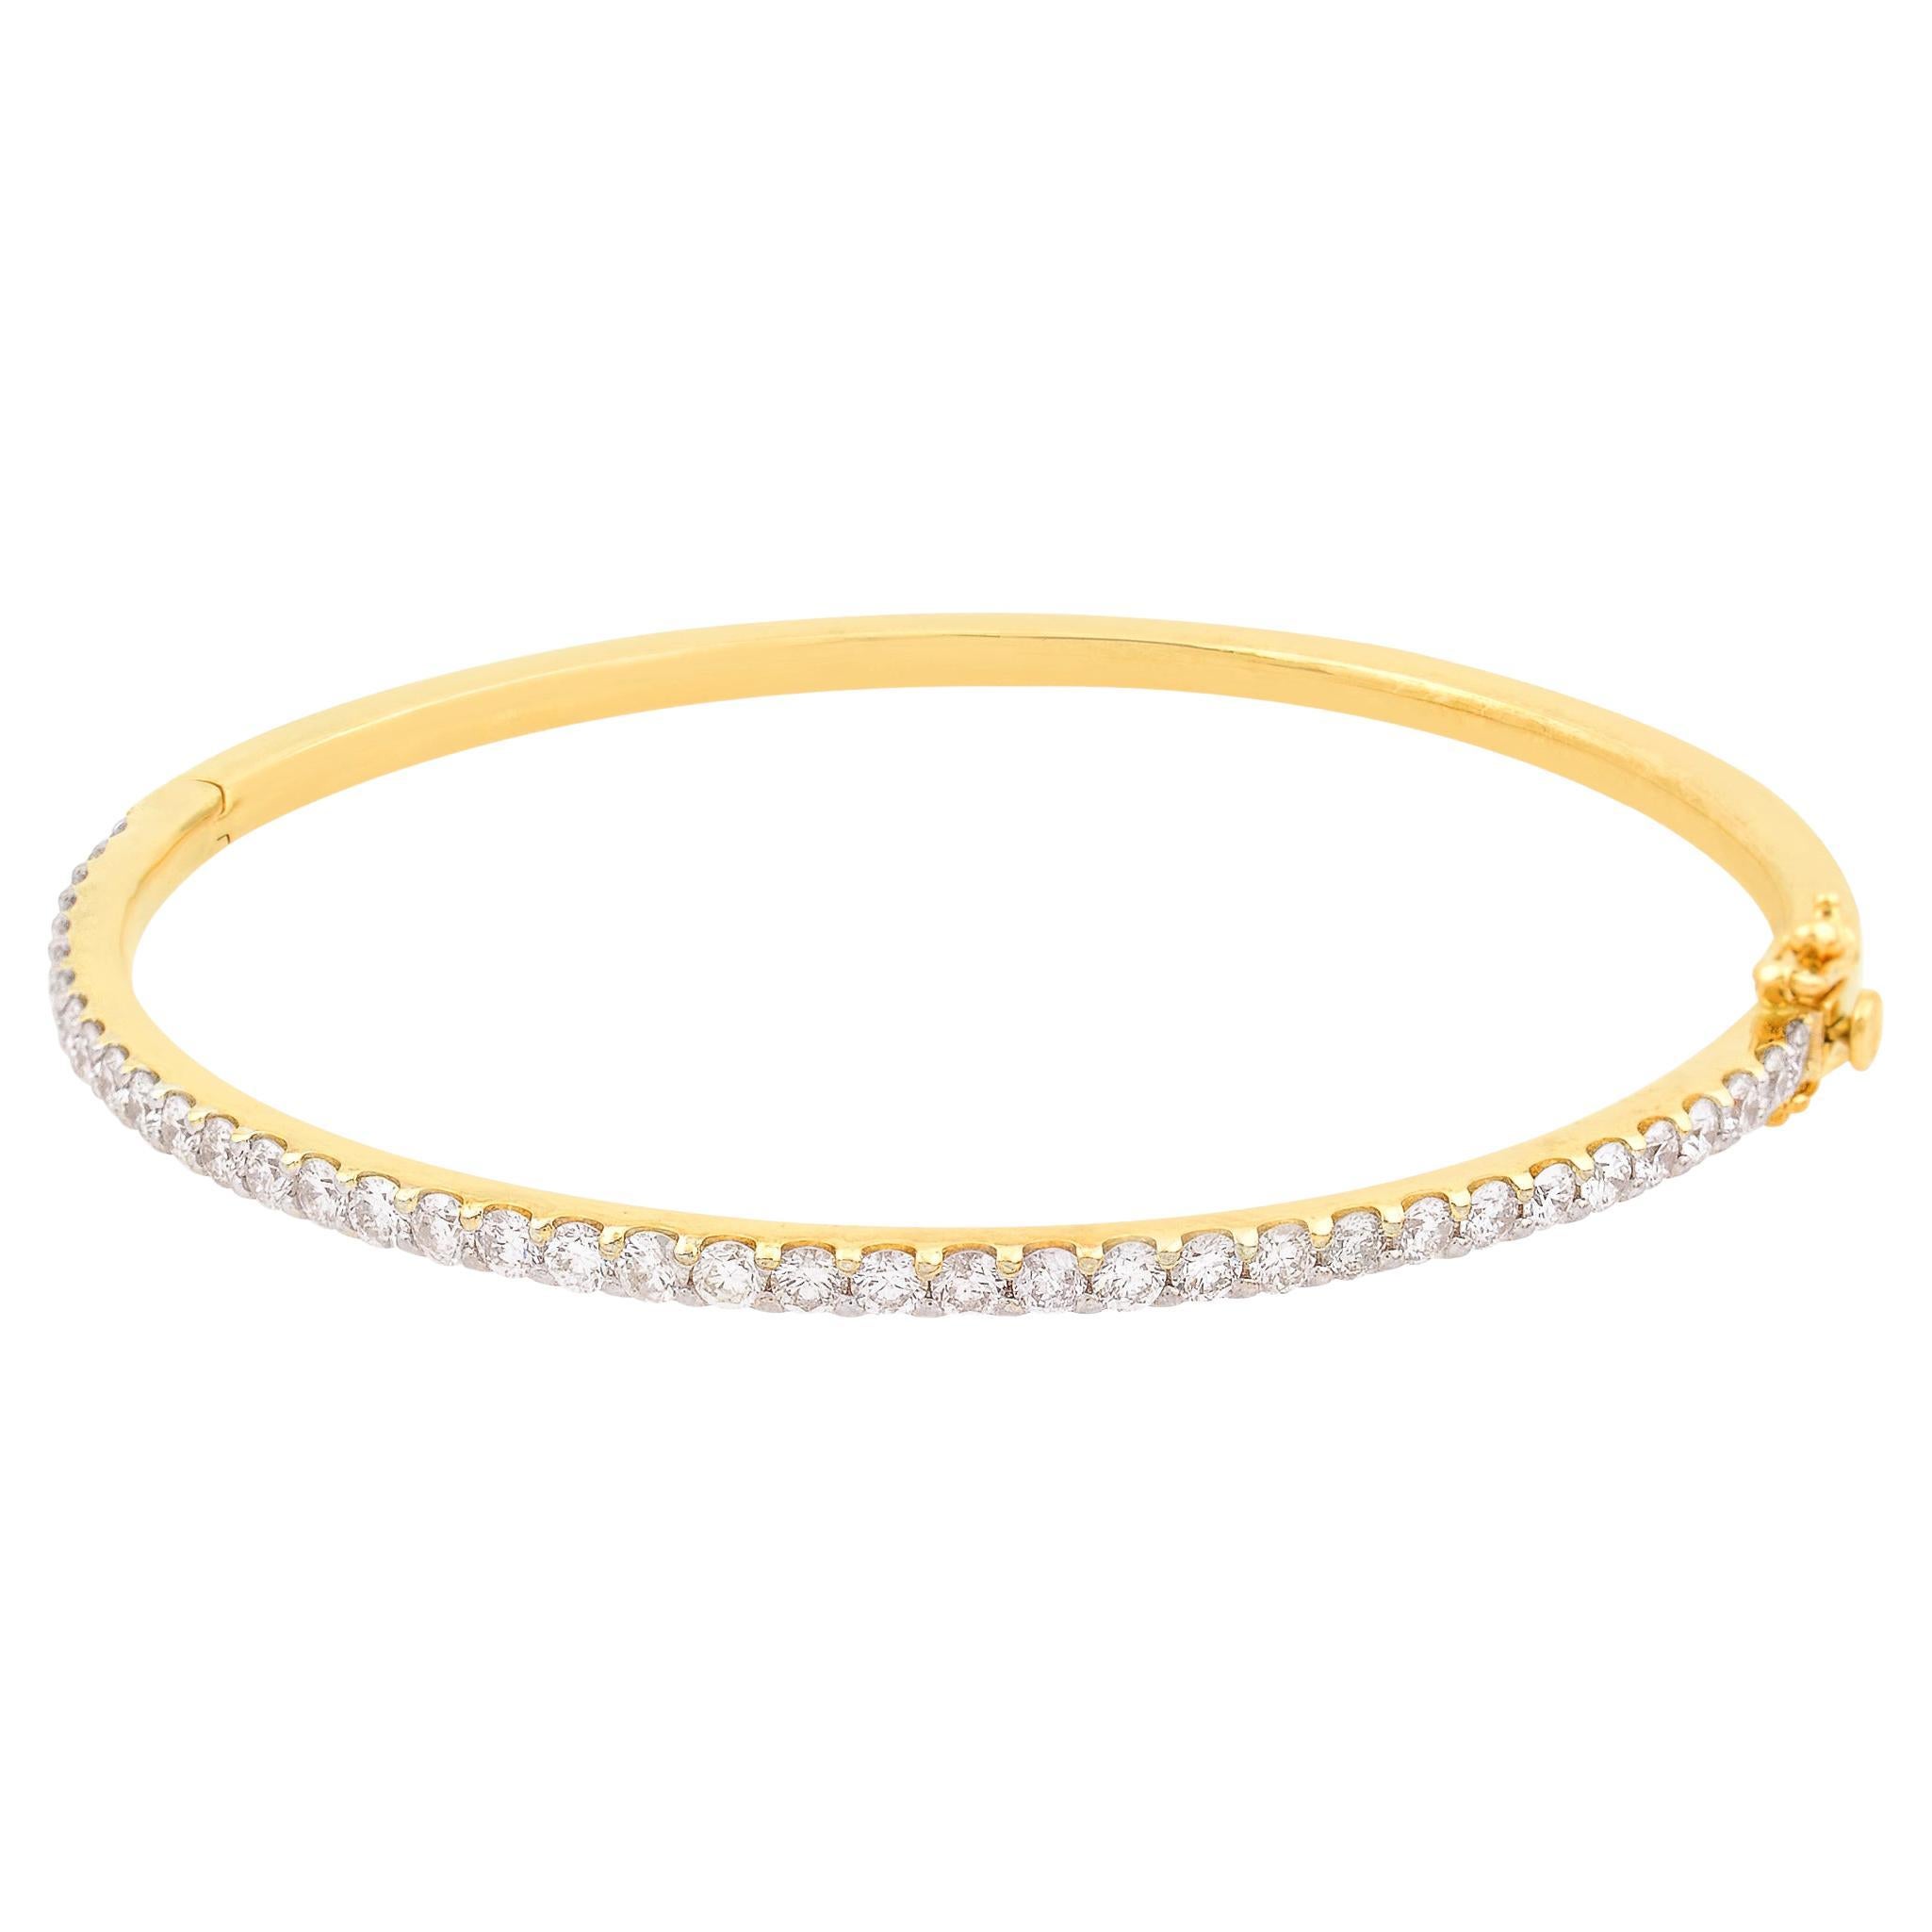 1.98 Carat SI Clarity HI Color Diamond Pave Sleek Bracelet 18 Karat Yellow Gold